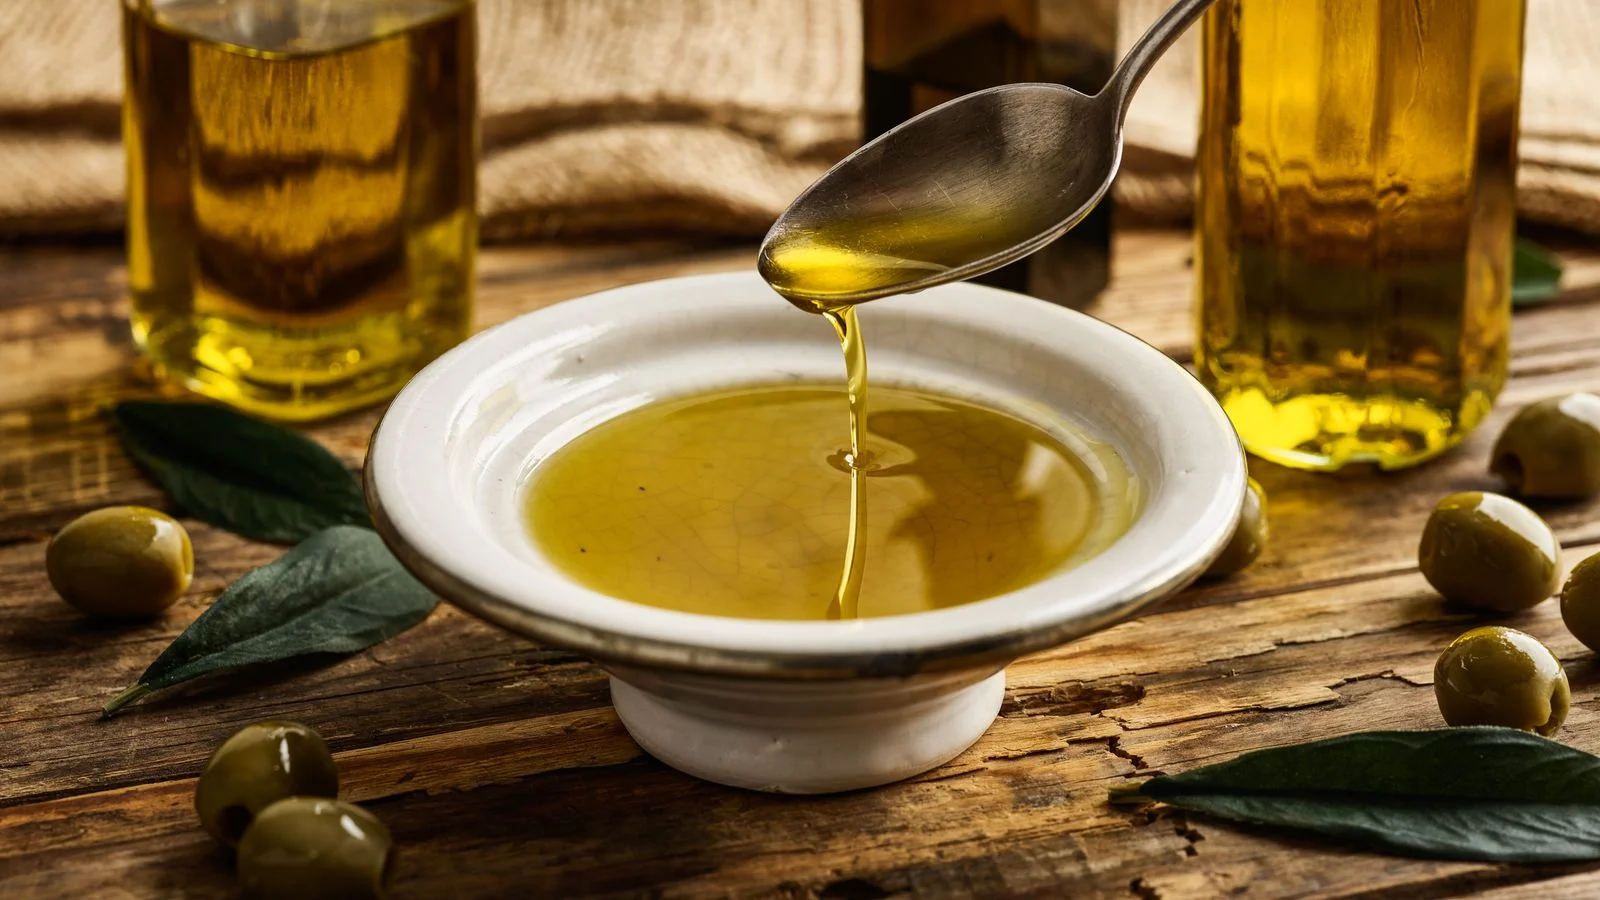 Jak wykorzystuje się oliwę z oliwek? Jakie są zalety i wady oliwy z oliwek?